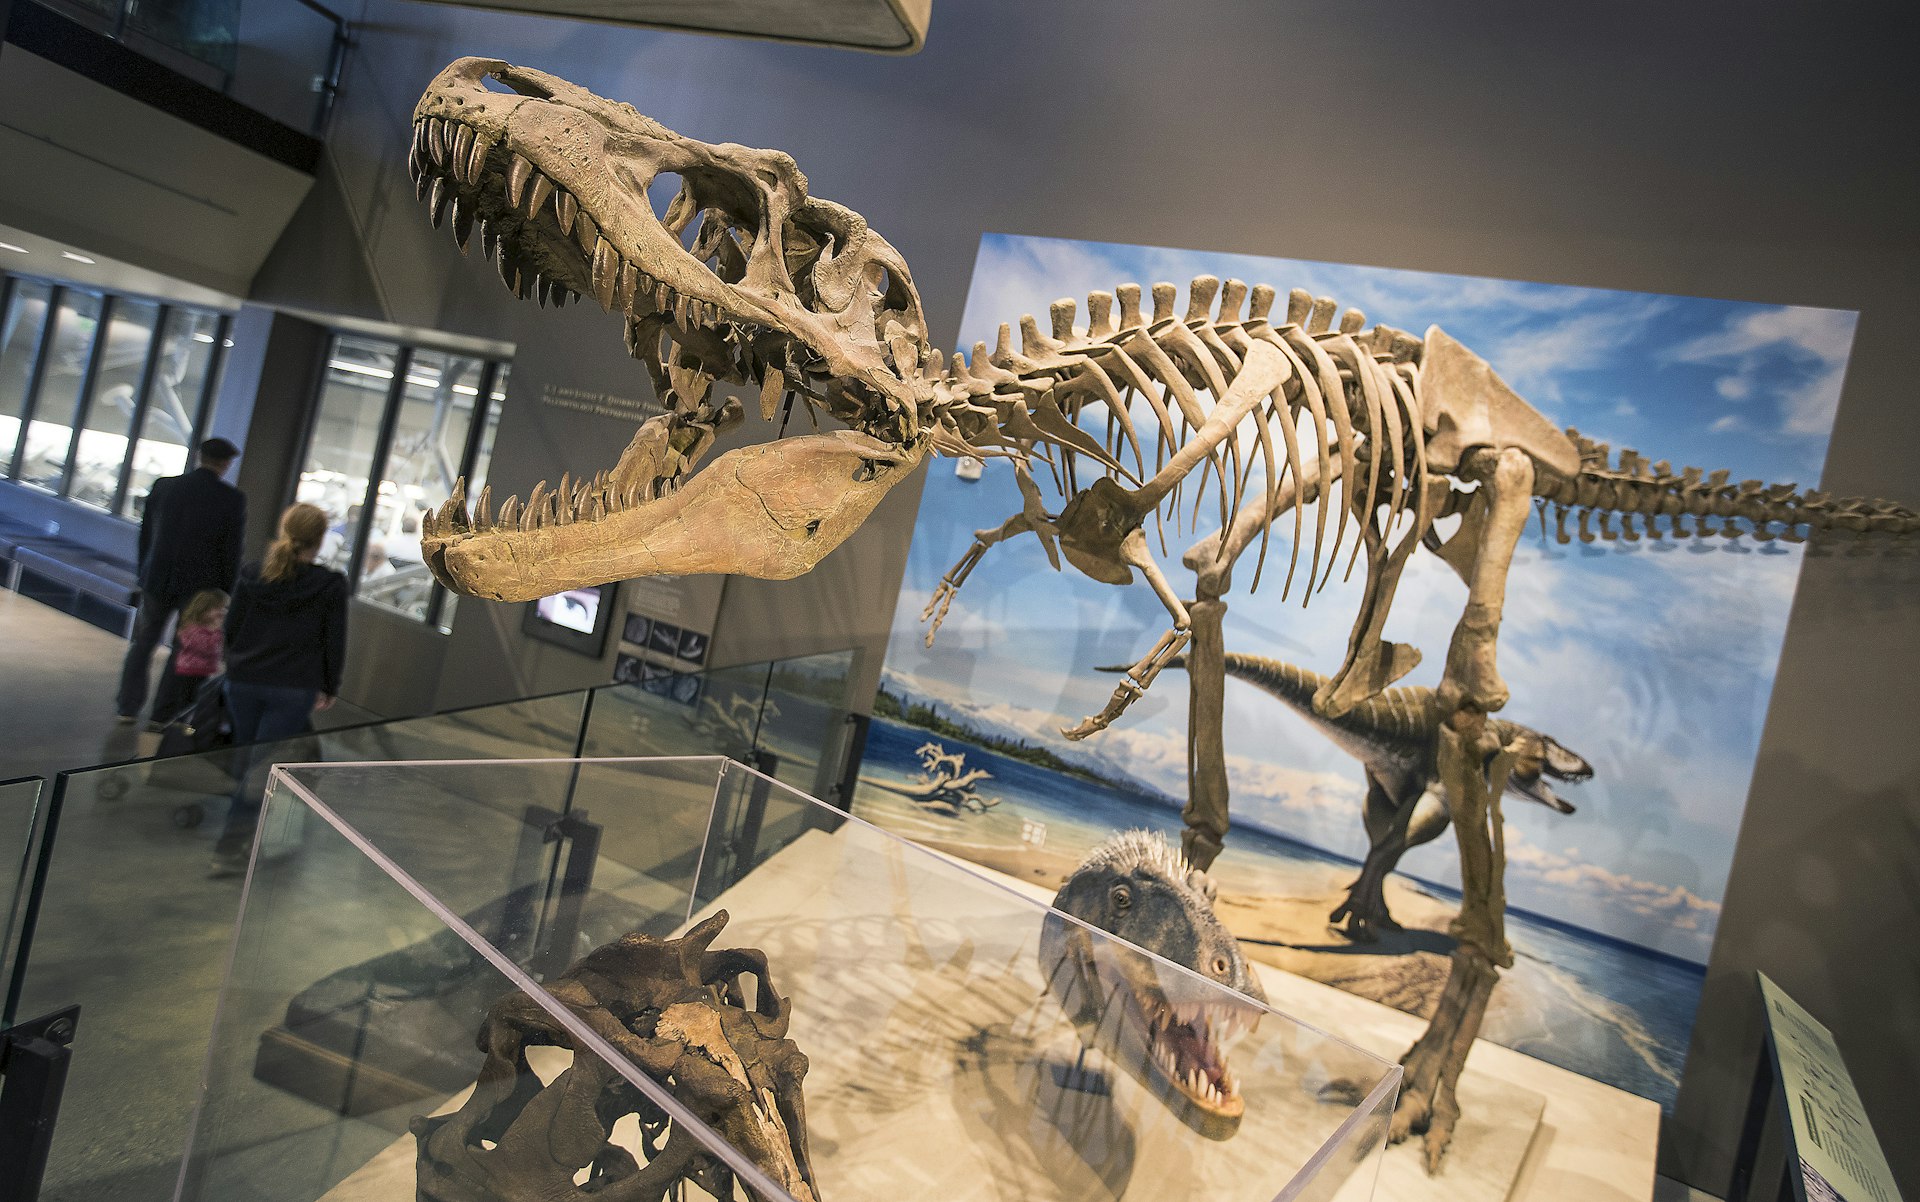 Skeletal dinosaur replica at the Natural History Museum of Utah